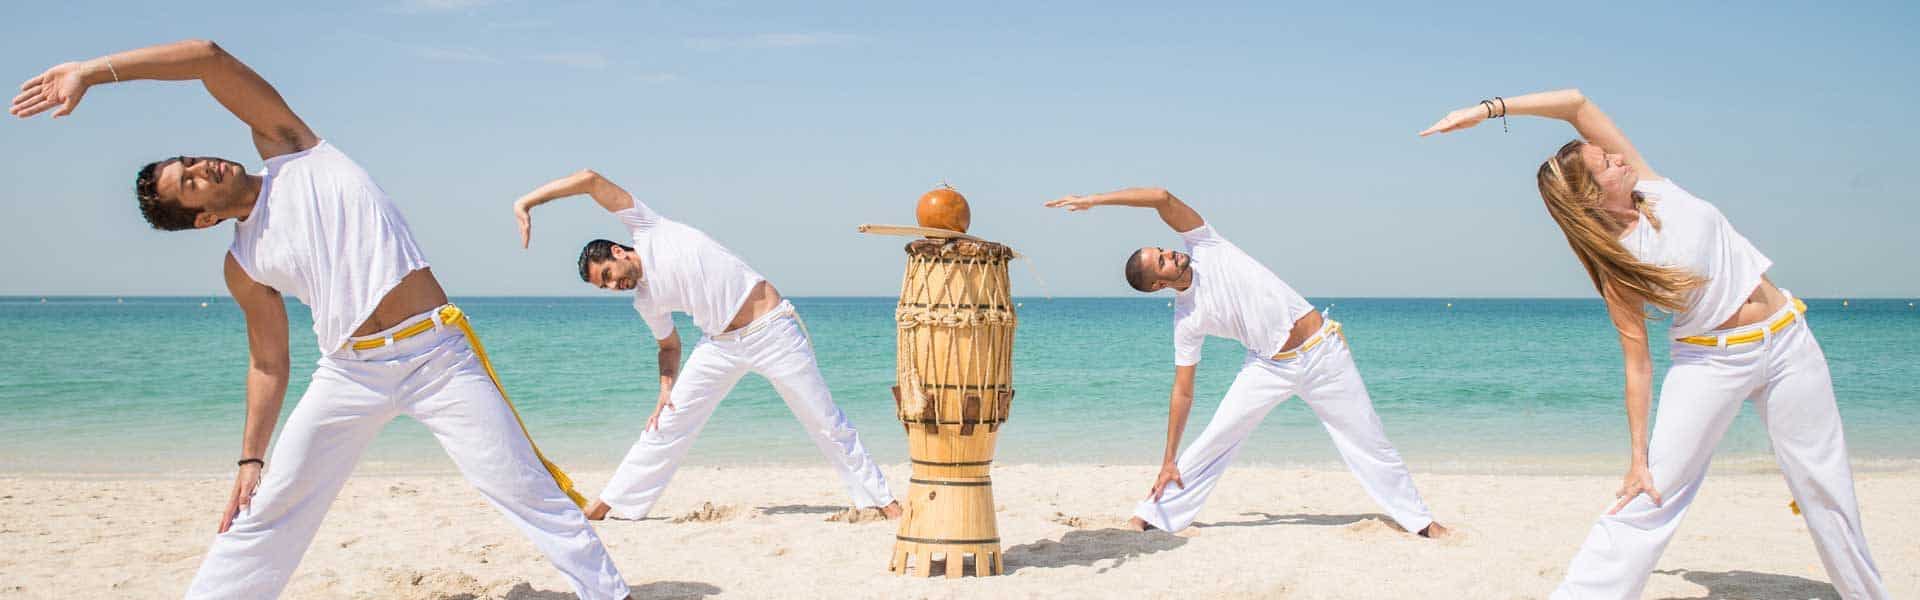 Einfach mal relaxen und das Leben leben ...Entspannung pur – Tai-Chi-Übungen im Urlaub